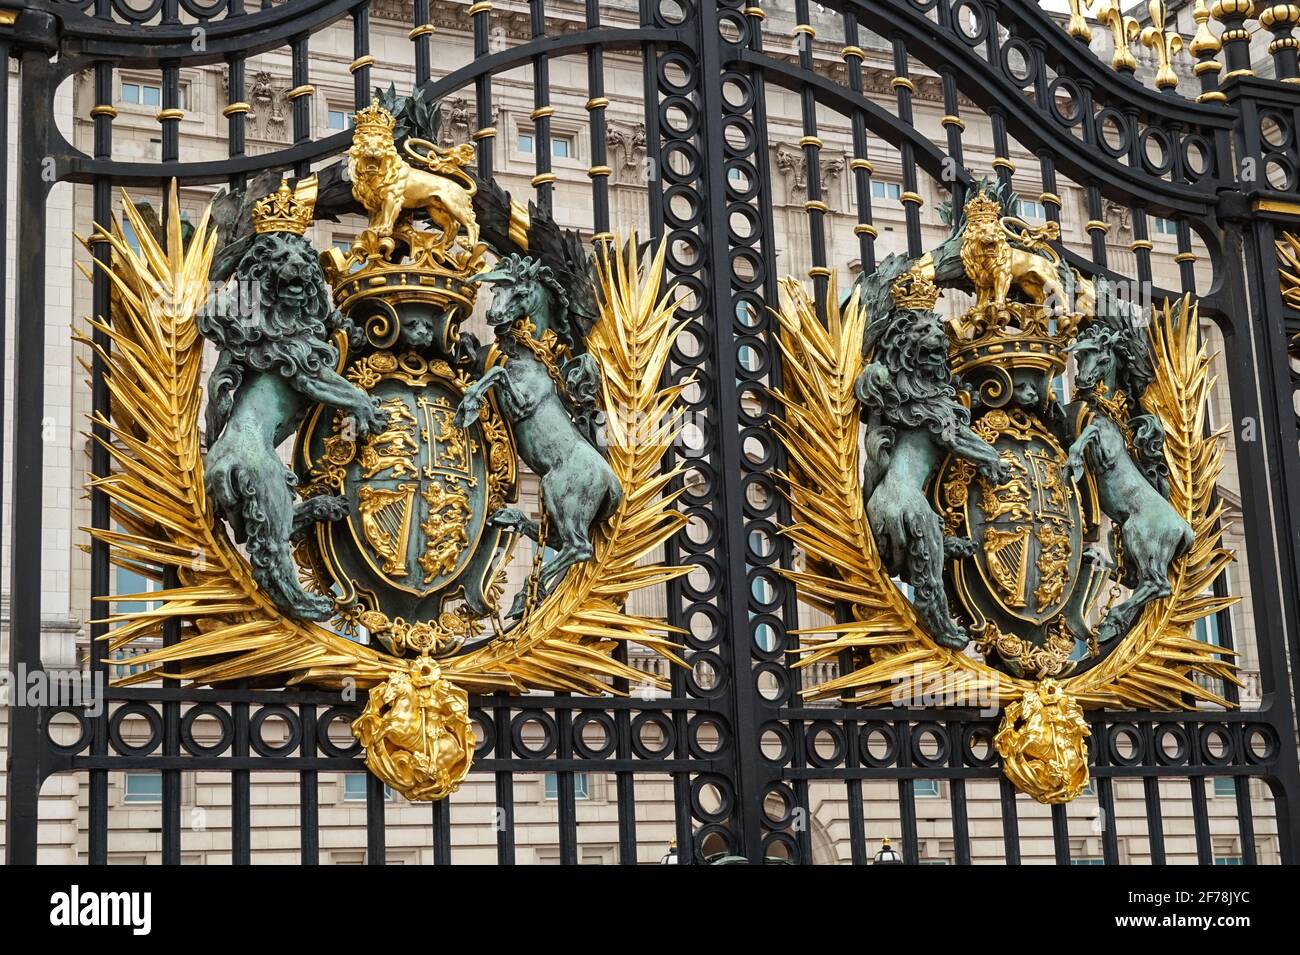 Royal Crest, blason royal du Royaume-Uni sur la porte de Buckingham Palace, Londres Angleterre Royaume-Uni Banque D'Images